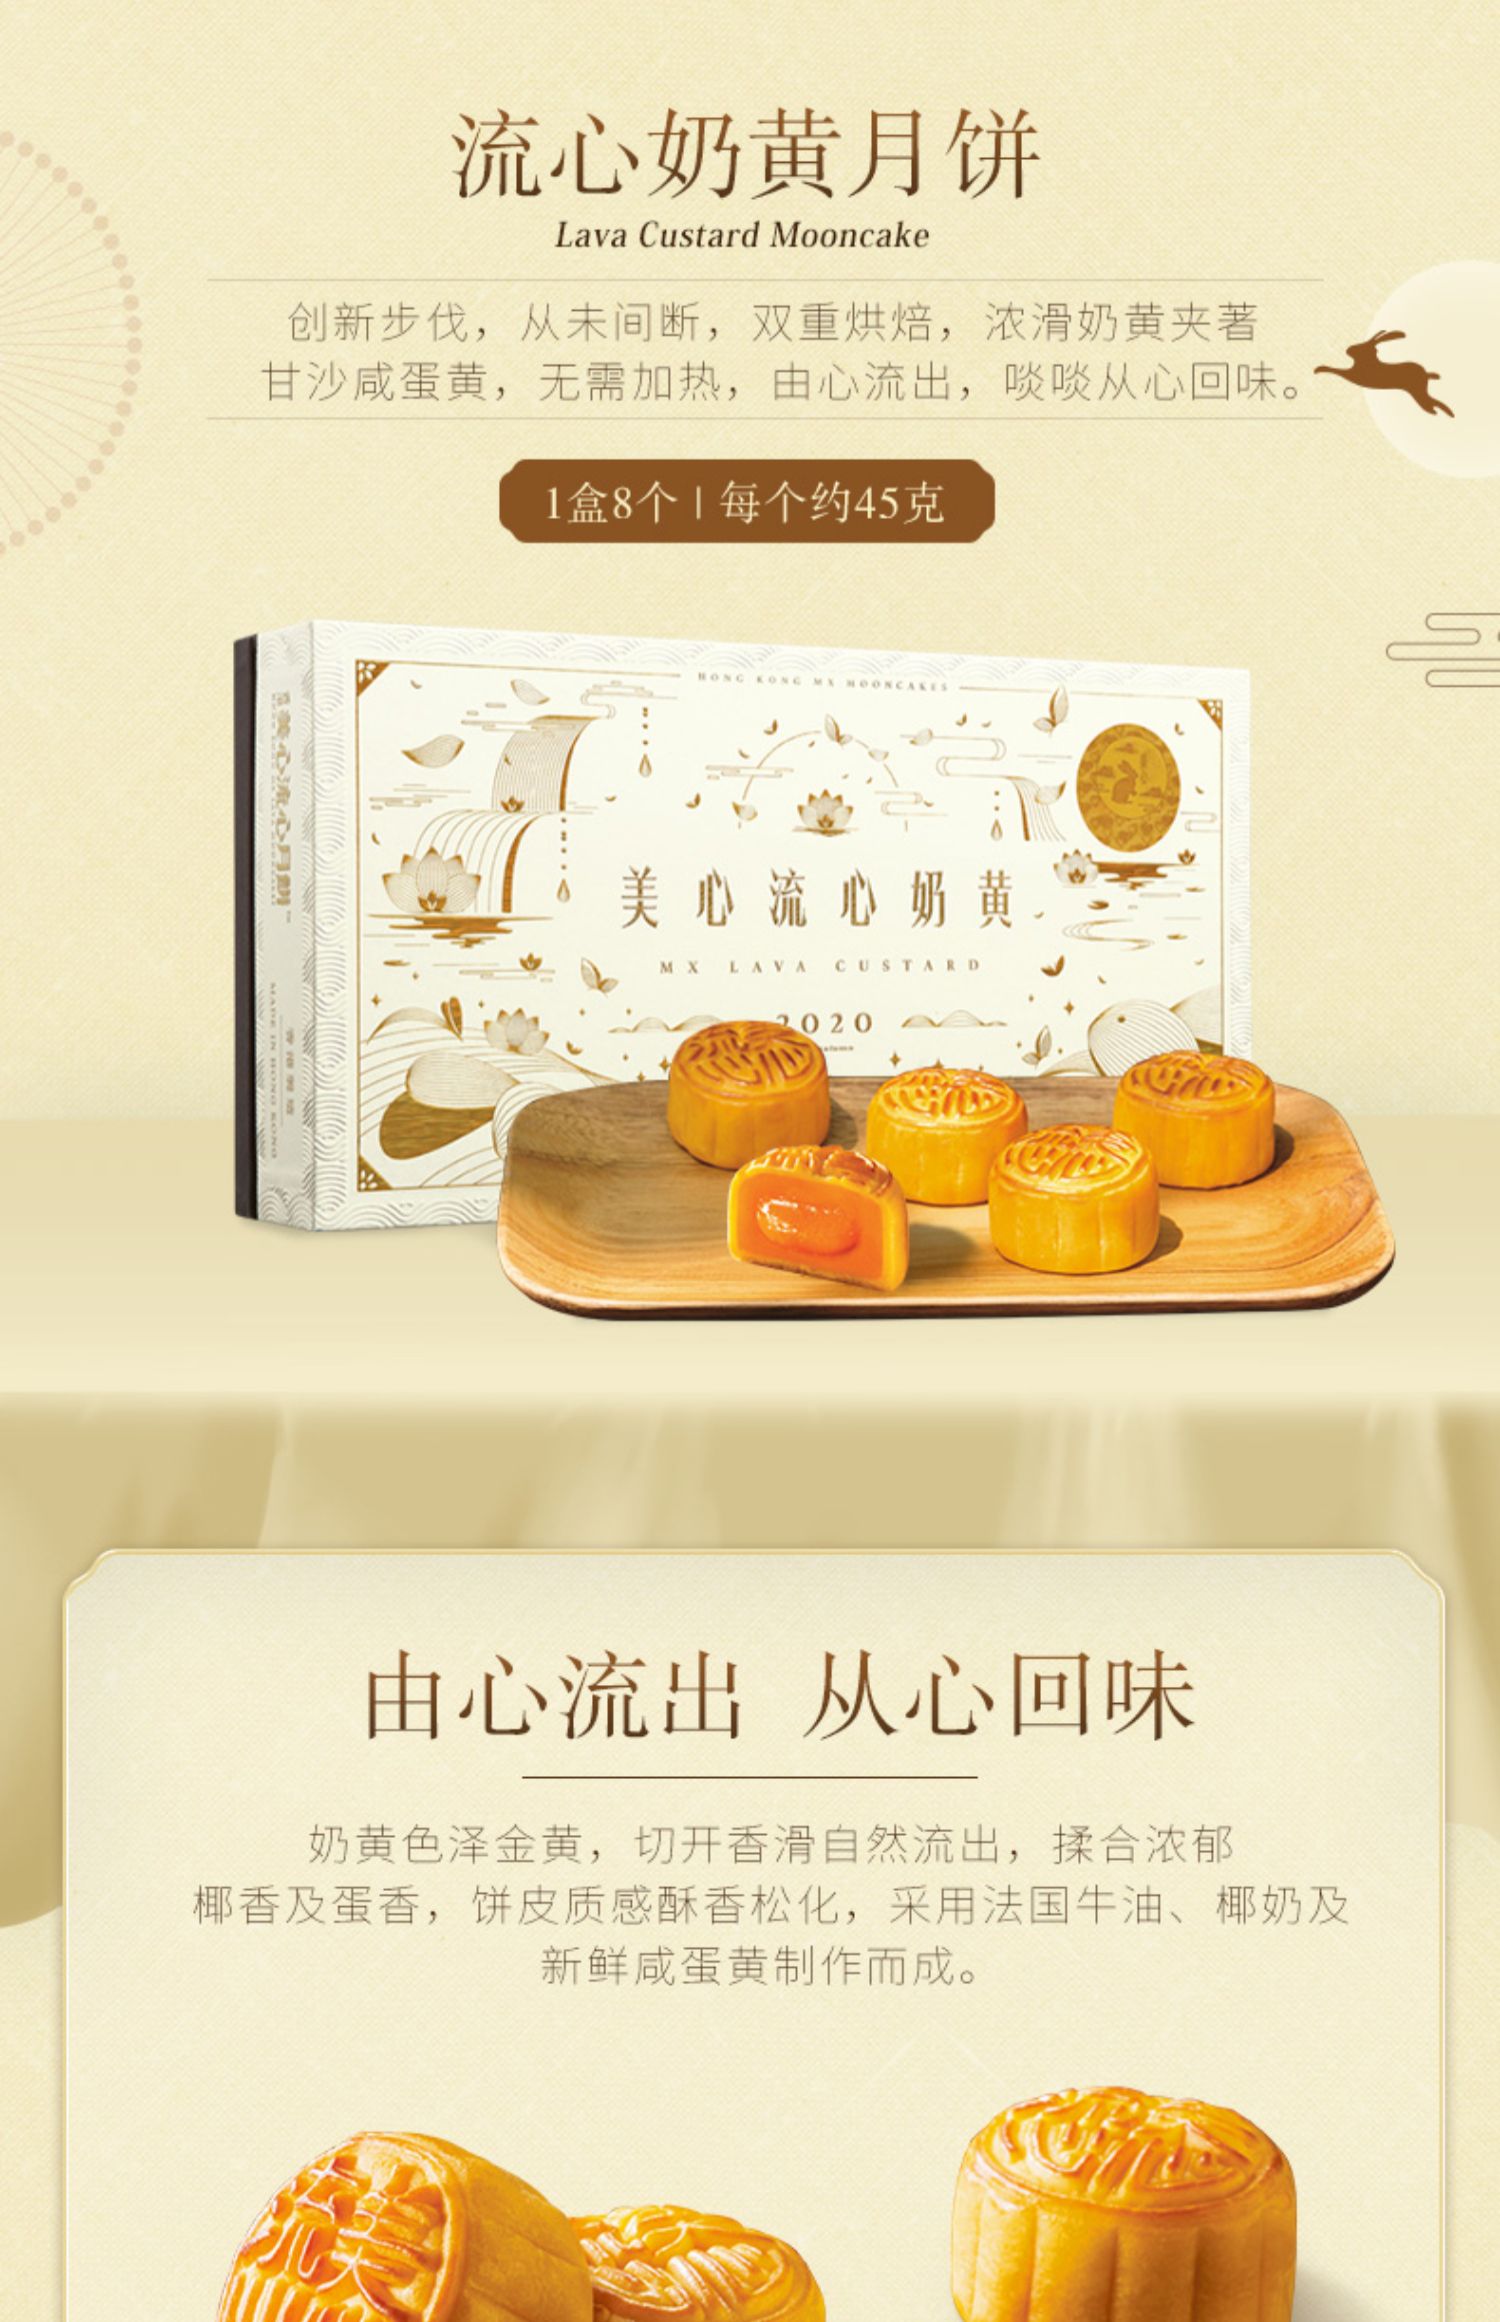 中国香港美心流心奶黄月饼礼盒中秋送礼进口港式特产奶黄蛋黄流沙